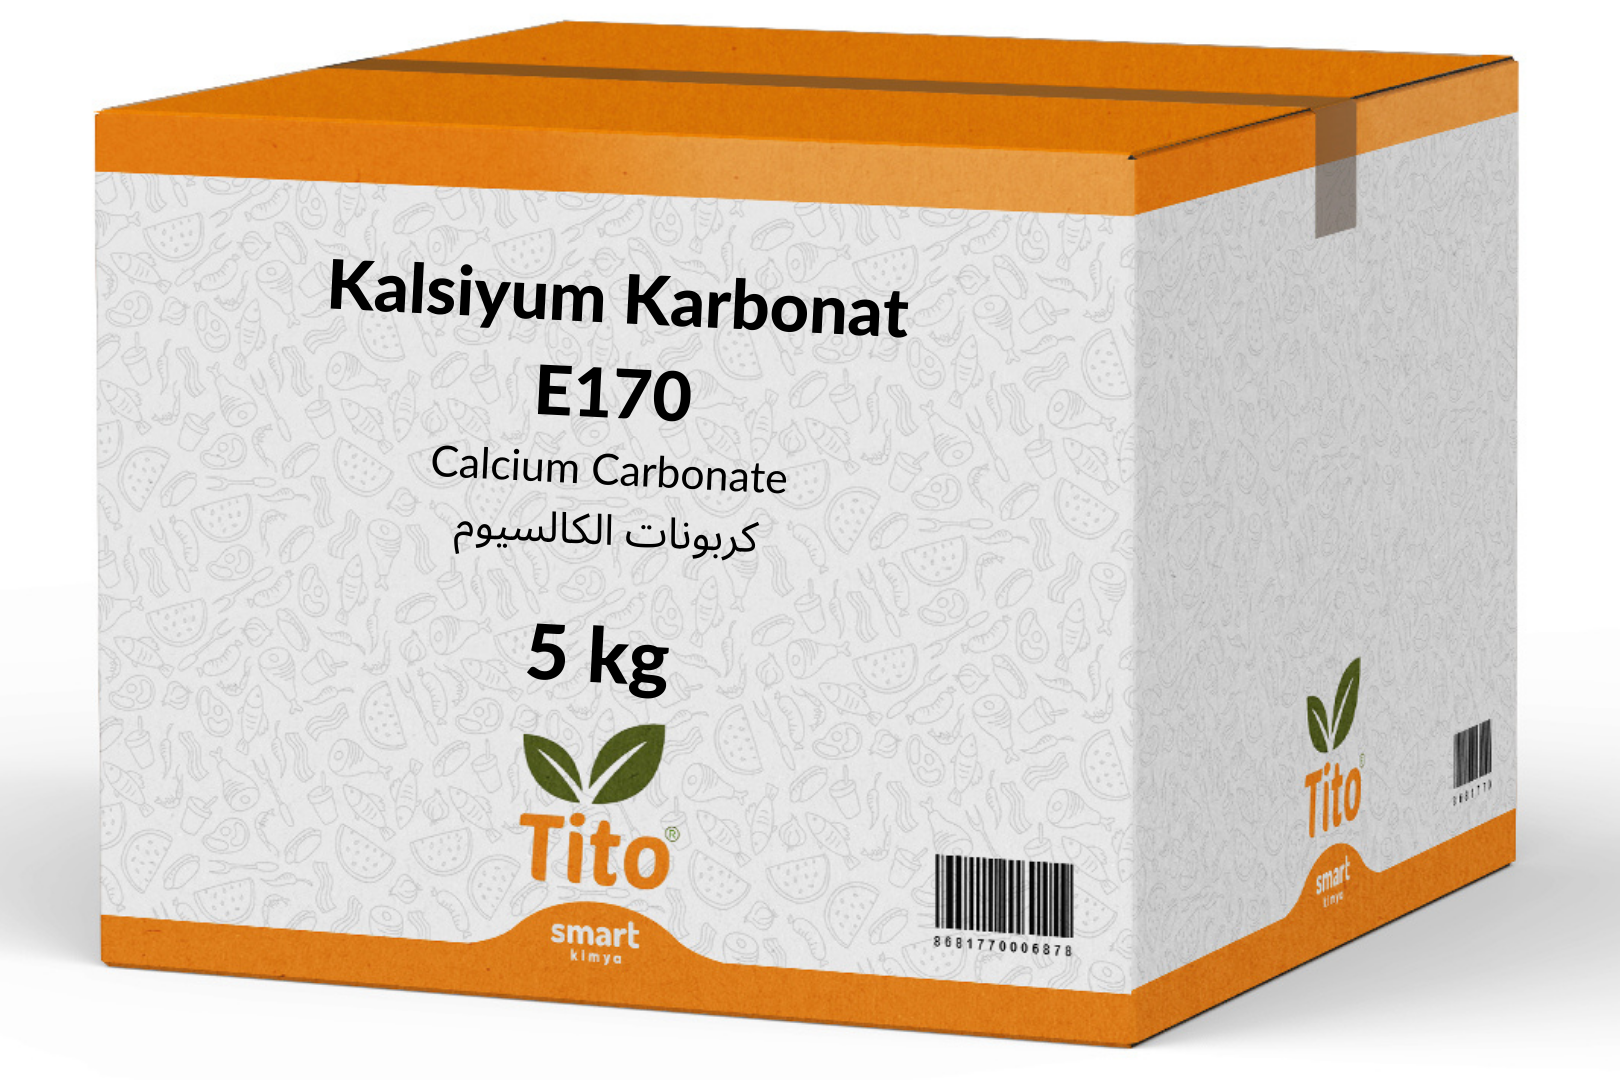 Kalsiyum Karbonat E170 5 kg